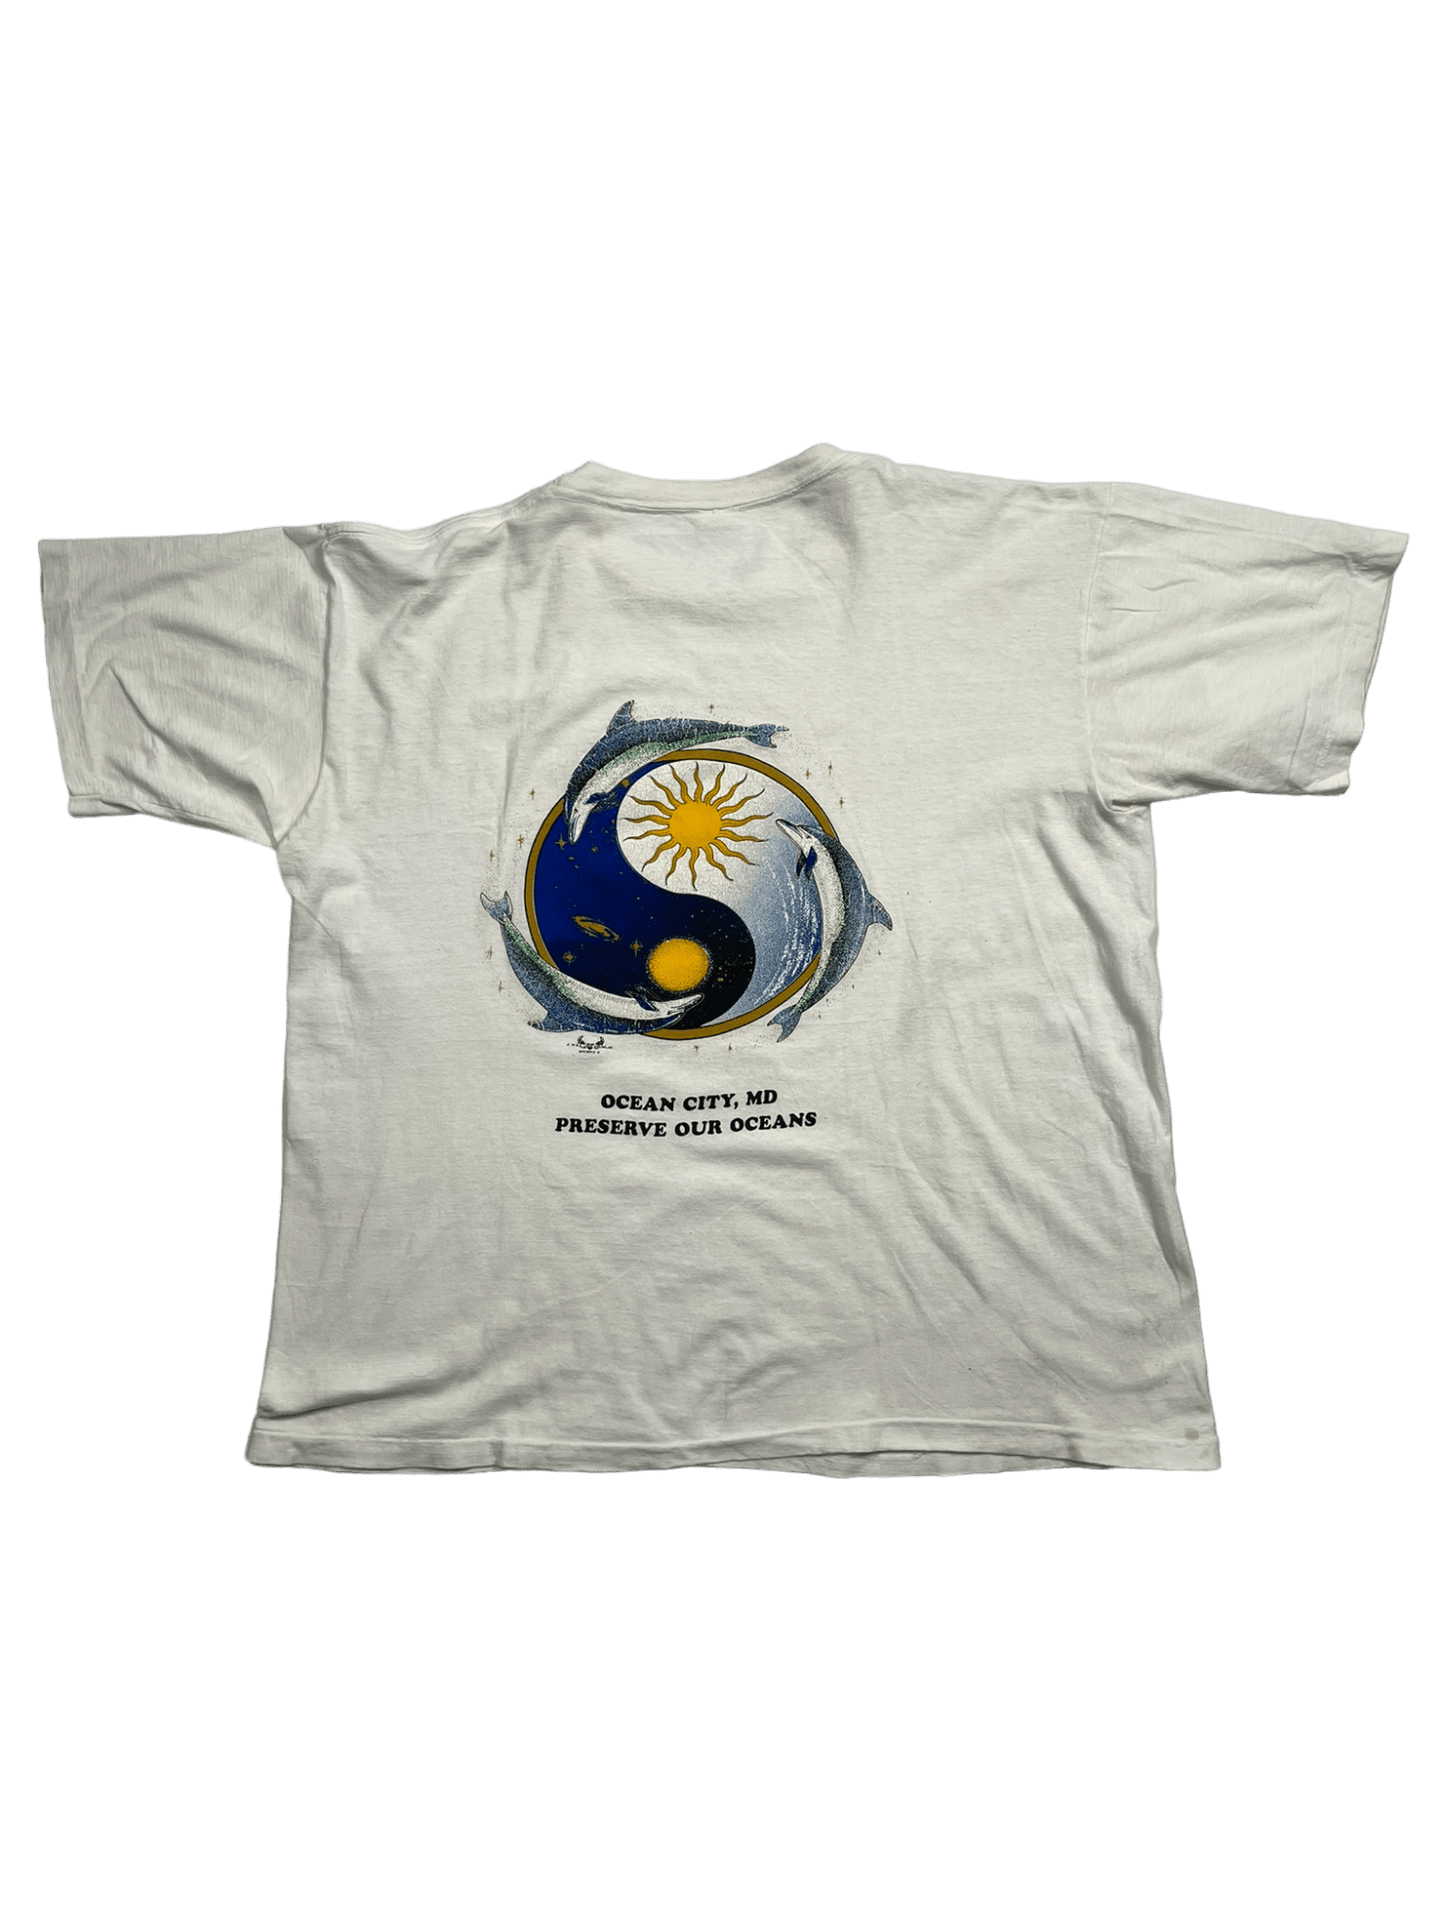 The Vintage Racks T-Shirt Preserve Our Oceans - XL